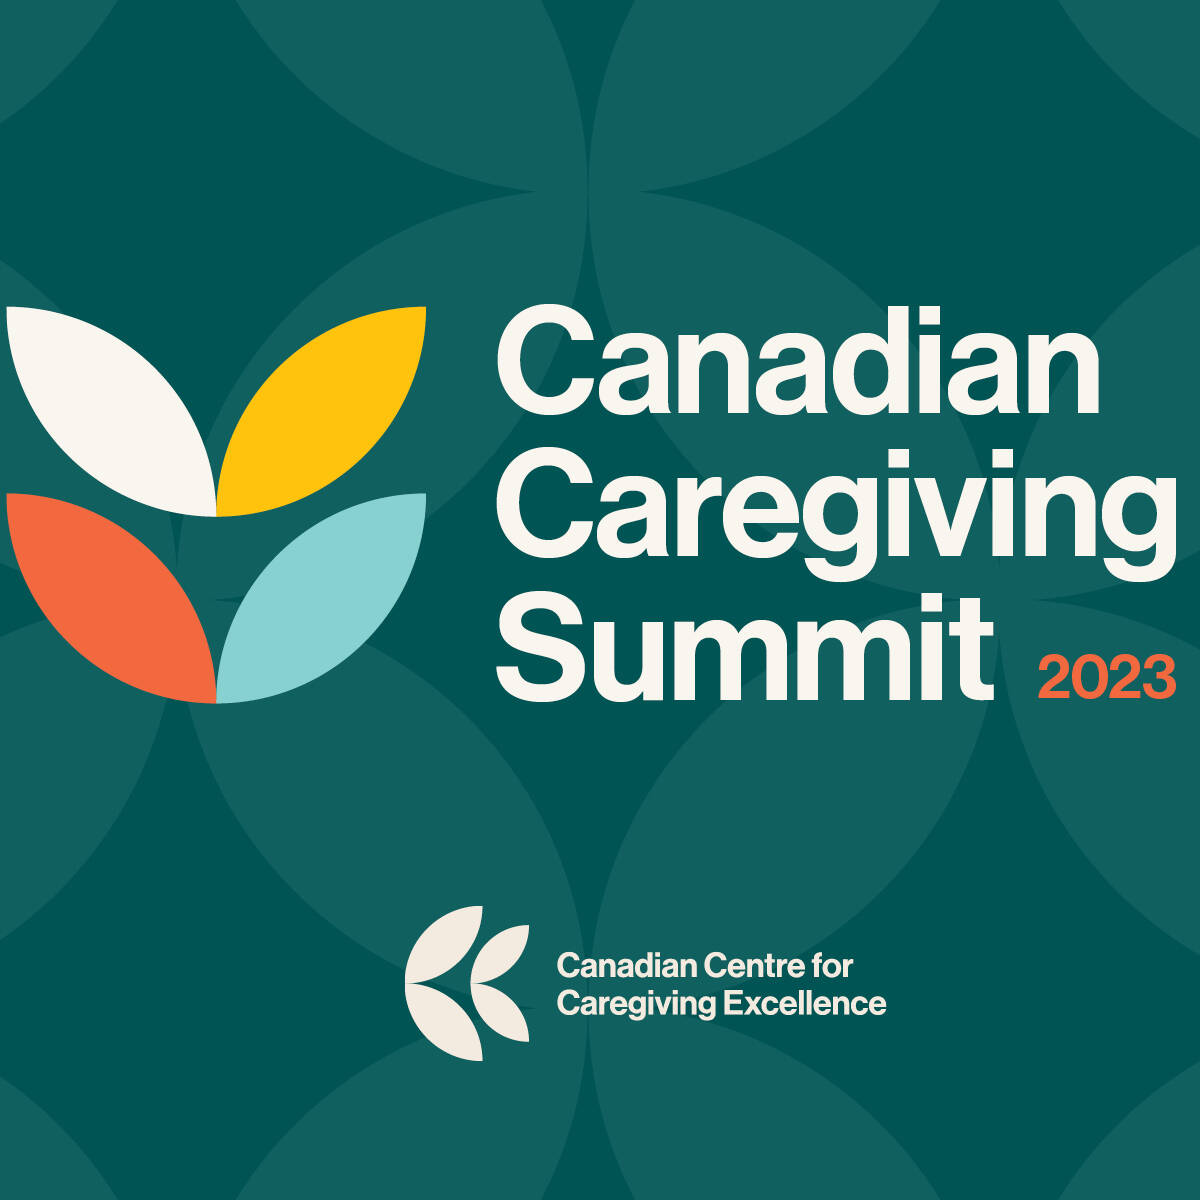 canadian-caregiving-summit-brand-design-website